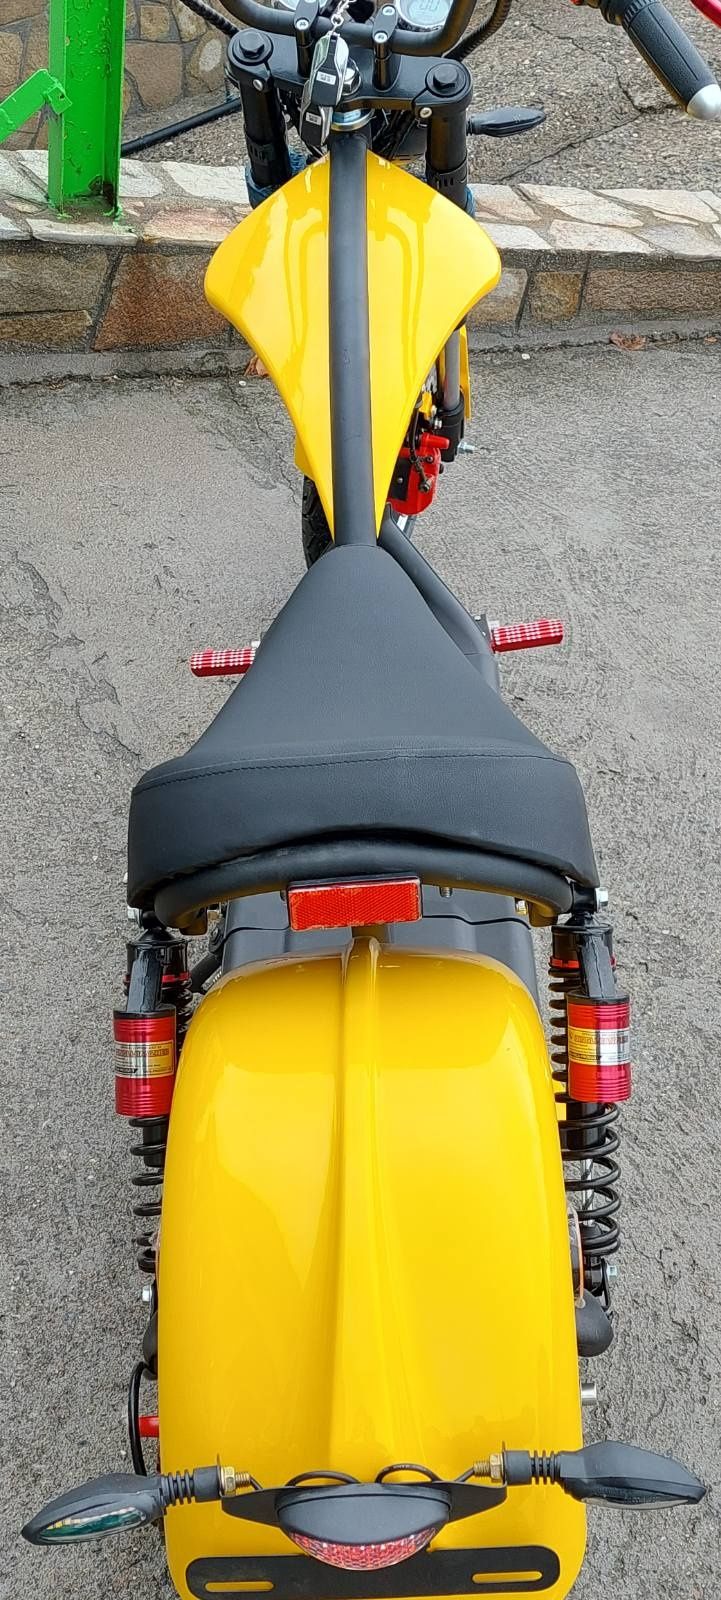 Електрически Скутер NEW mod. Yellow Big Harley 2500W реални